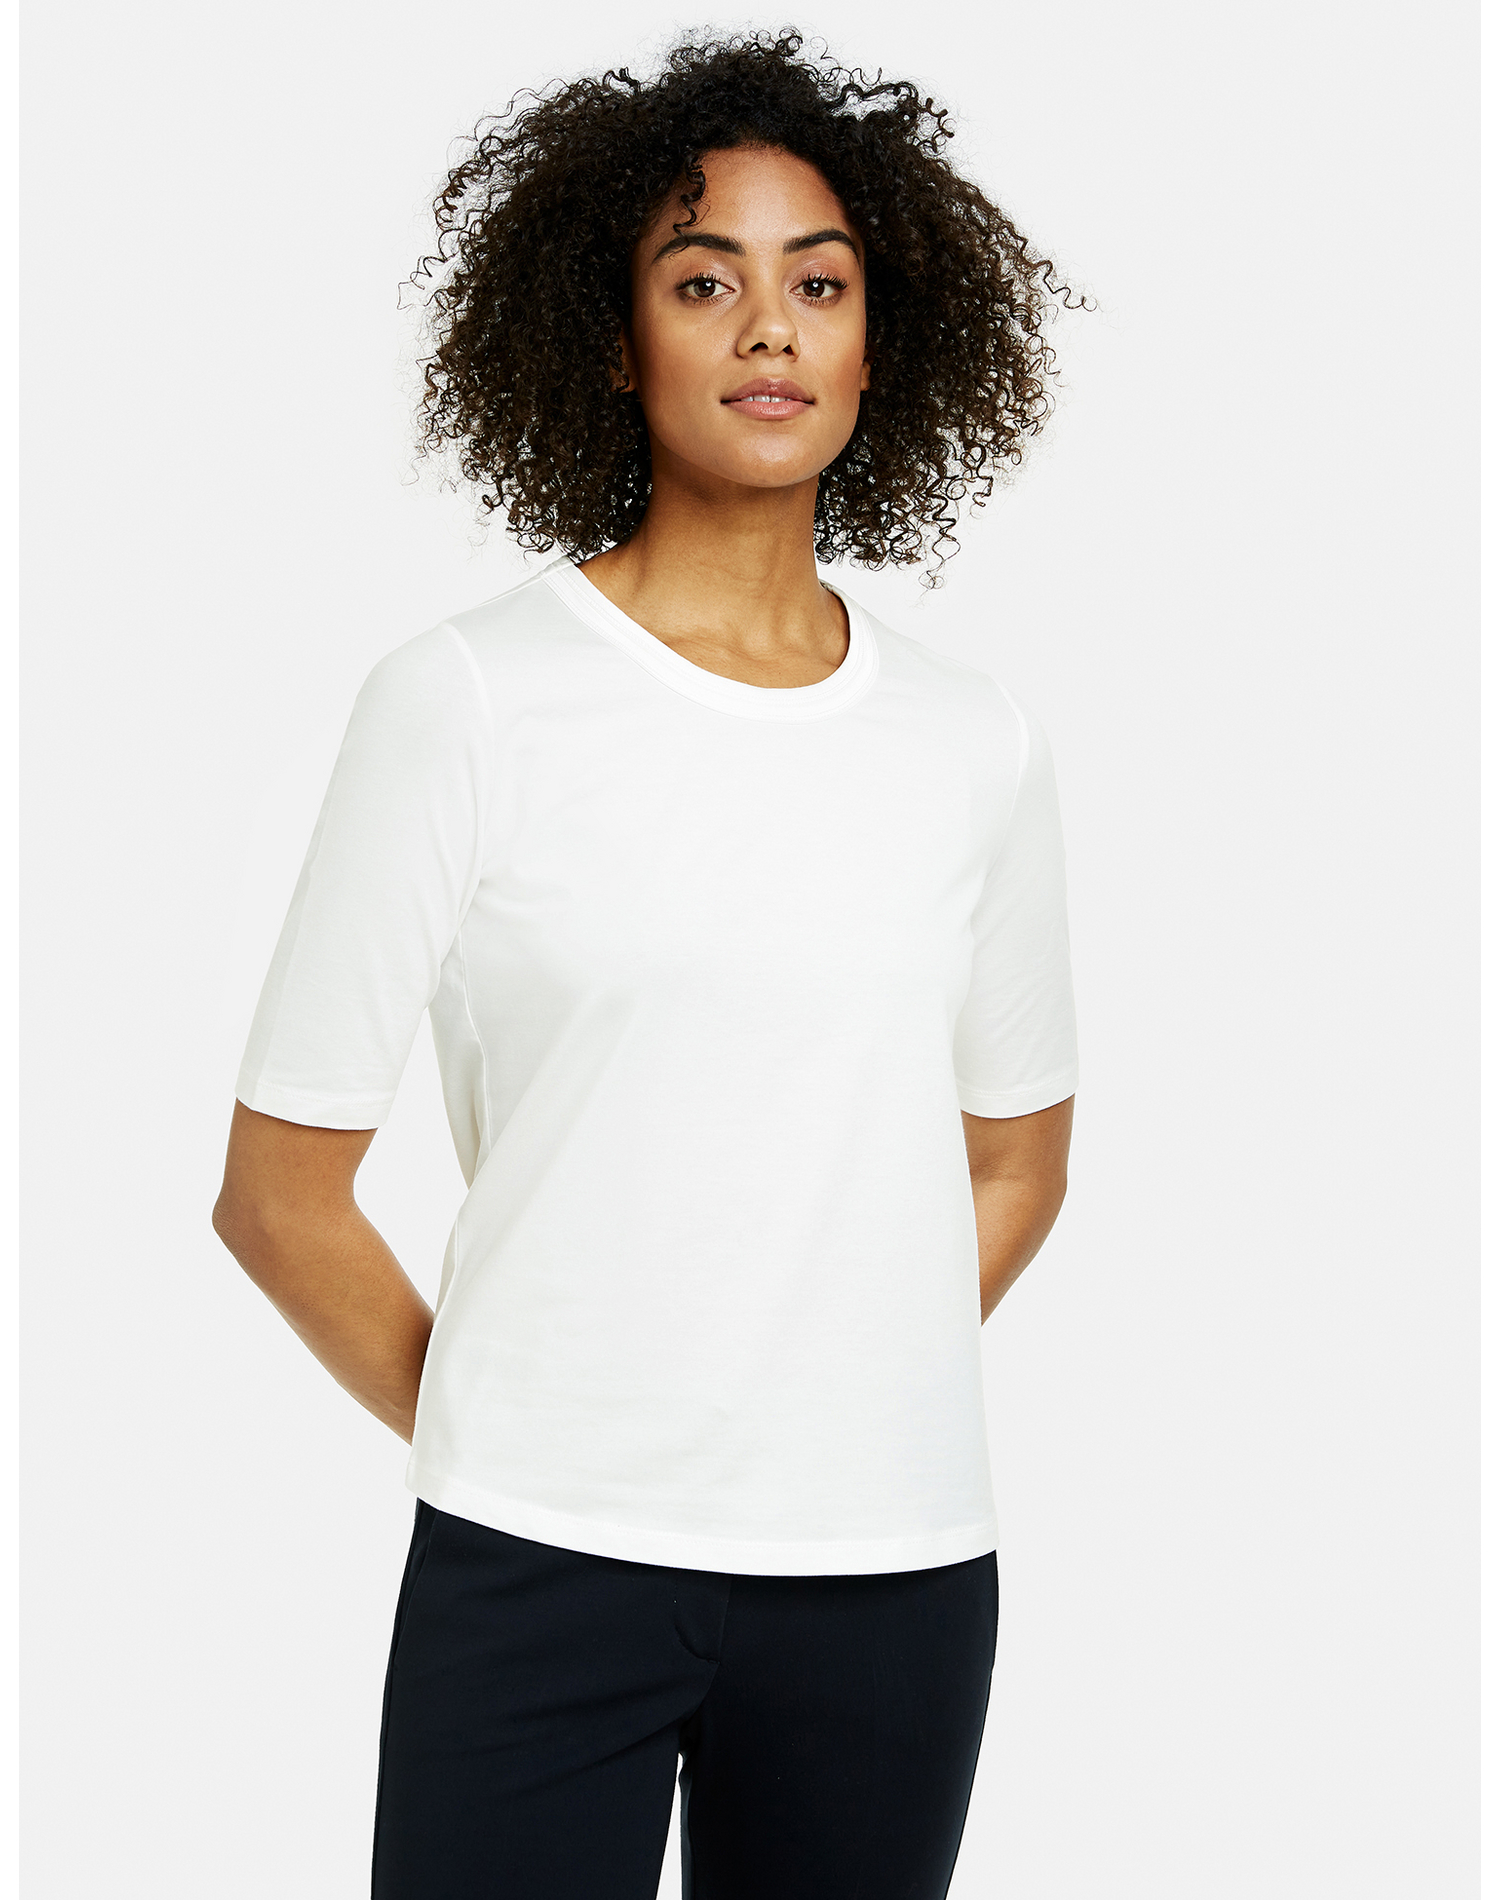 Donna Abbigliamento TAIFUN Maglietta in Bianco 